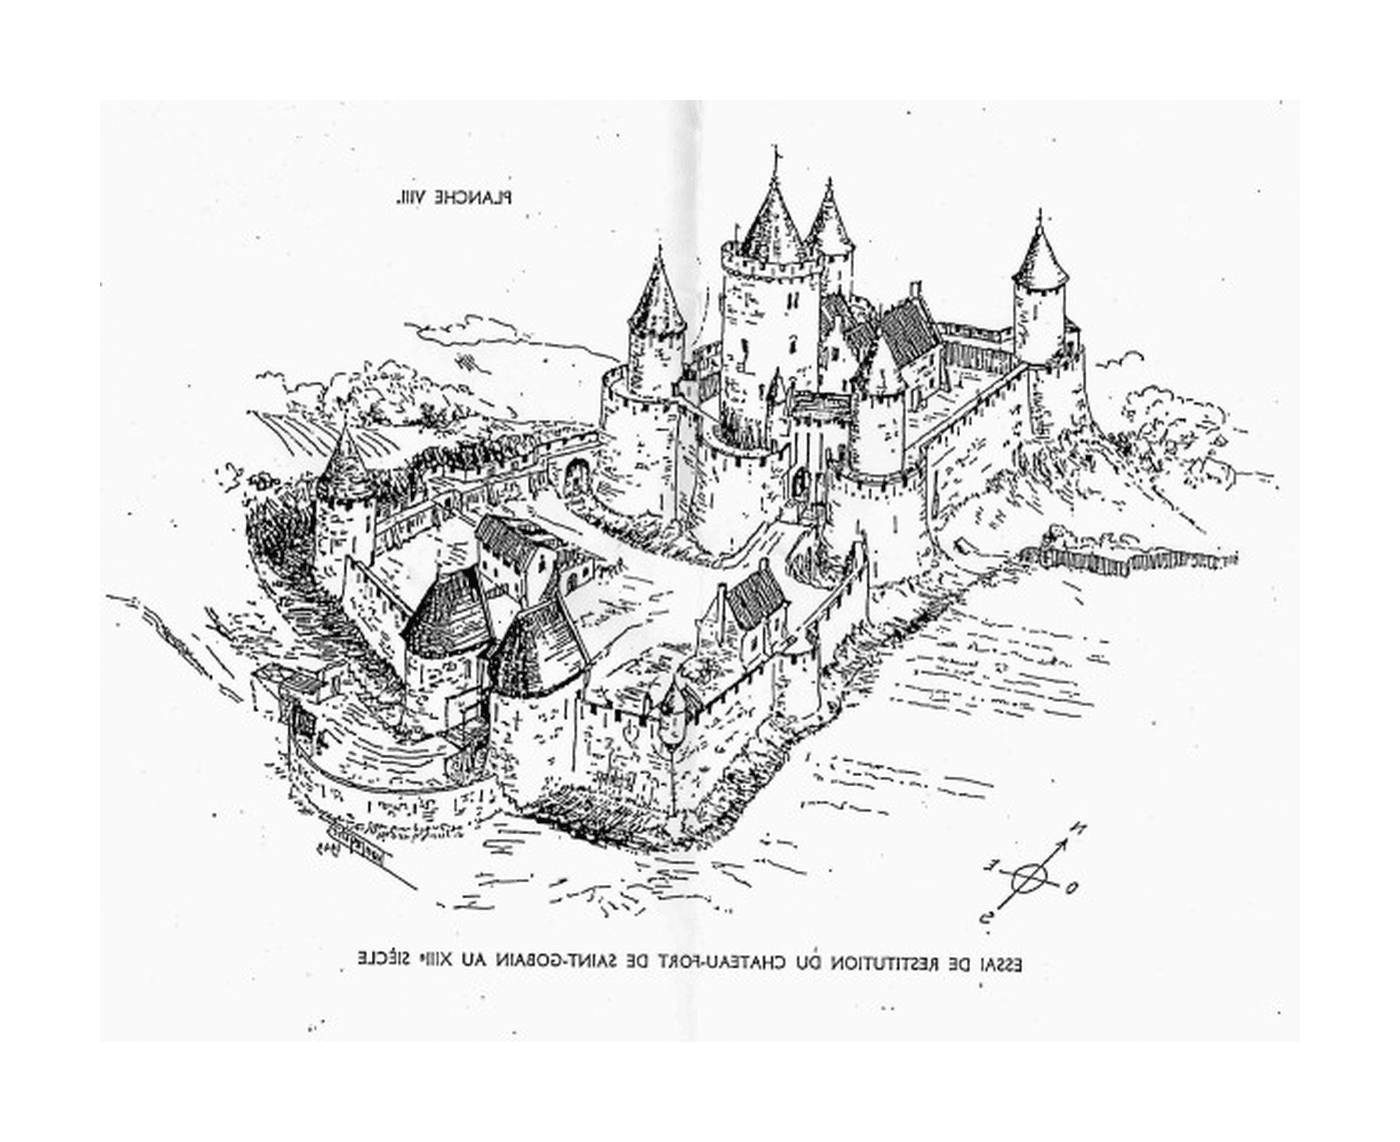  Um castelo da Idade Média, localizado no século XIV em Saint-Gobain 